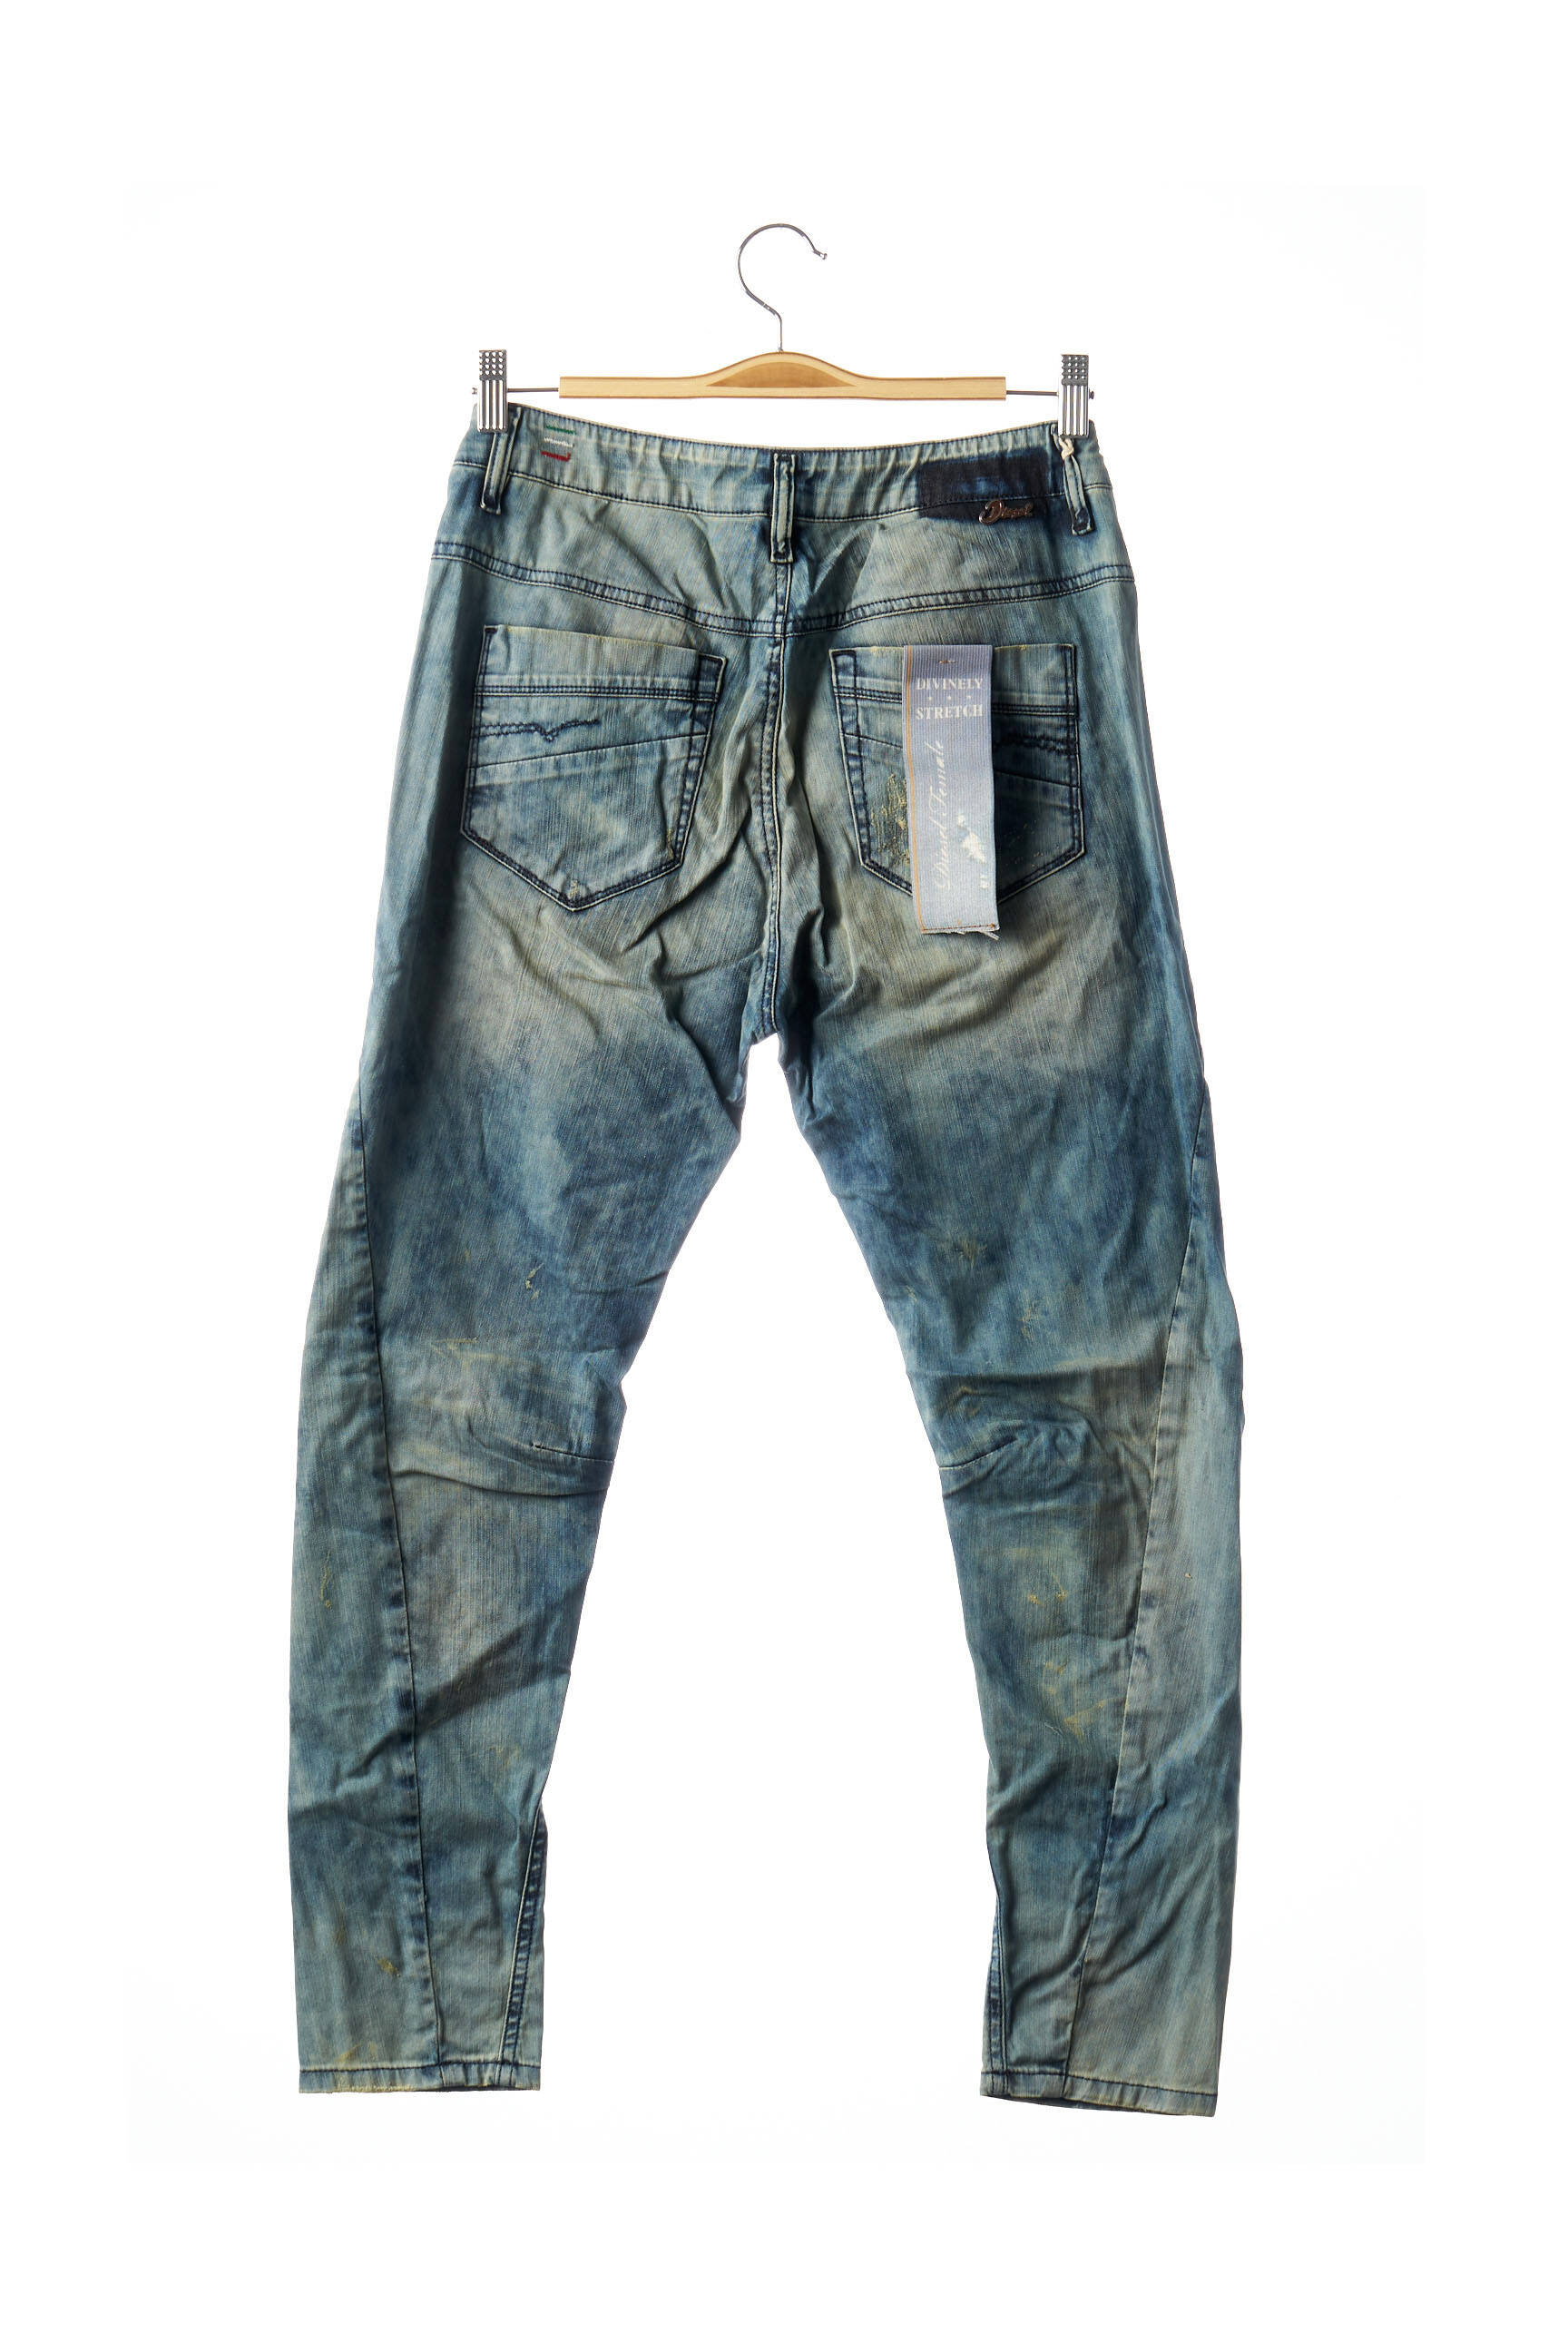 Abercrombie & Fitch Jeans Baggy pour Homme en Promotion - Pas